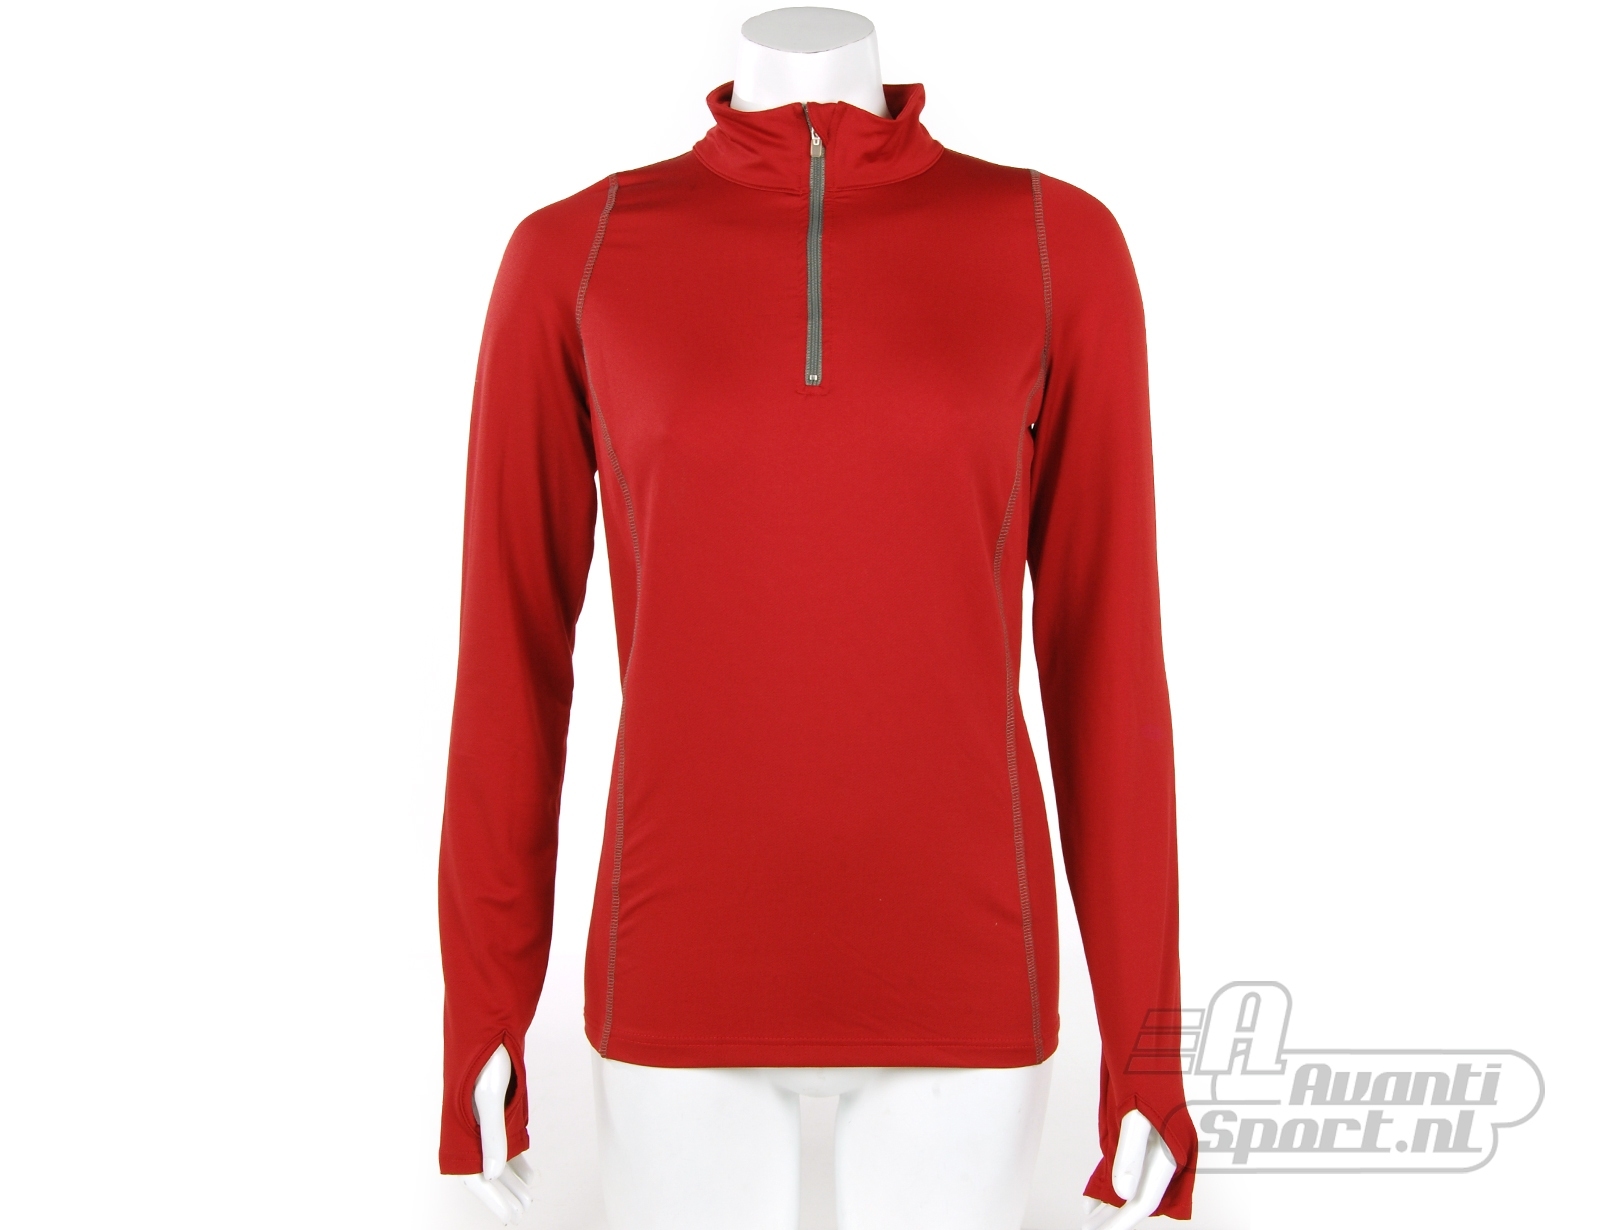 Avantisport - Cavello - Running Shirt Women's - Red/chilli